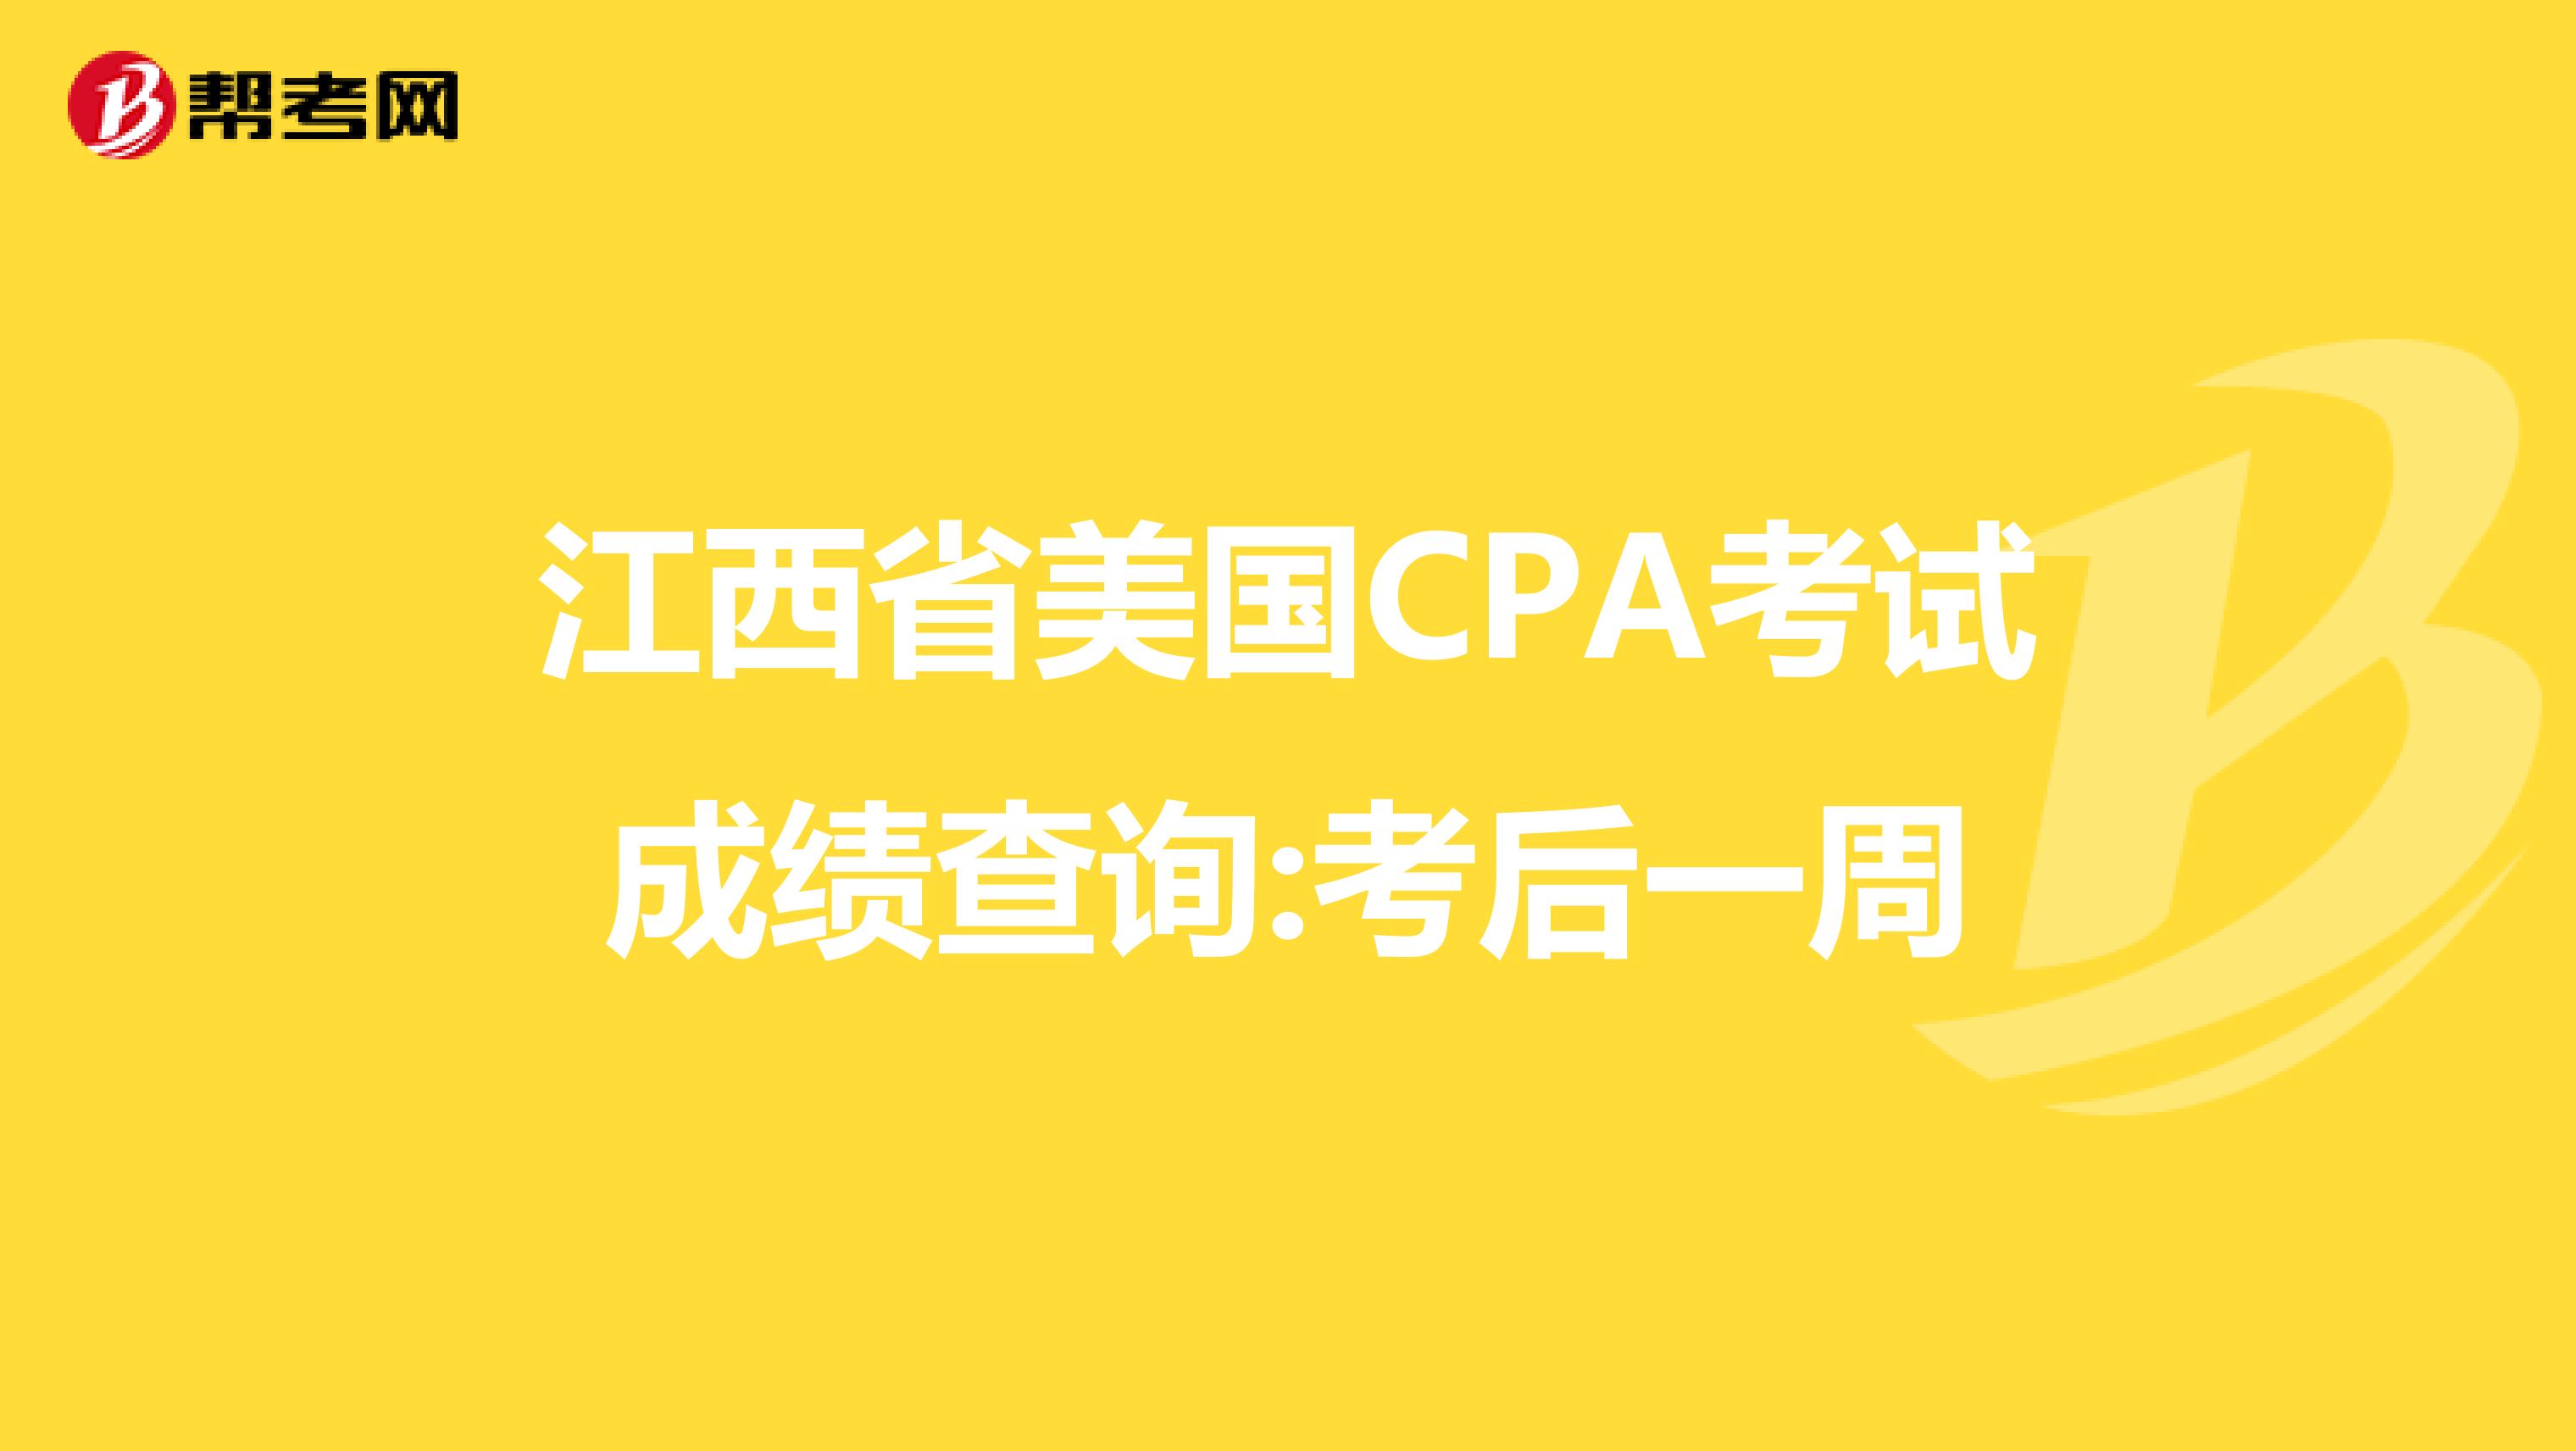 江西省美国CPA考试成绩查询:考后一周